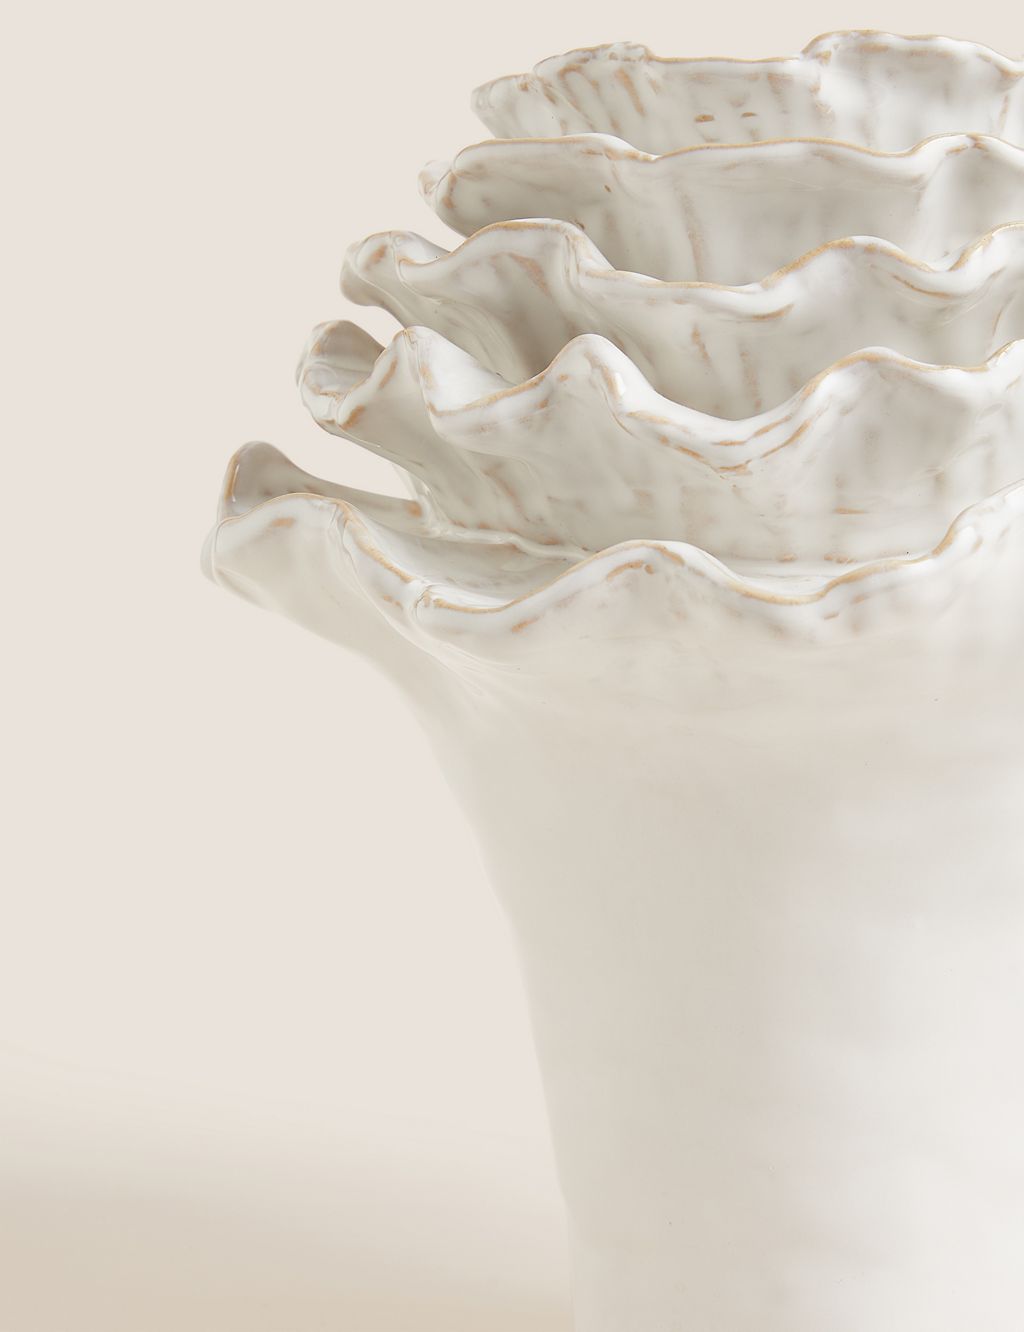 Medium Floral Ceramic Vase 1 of 4